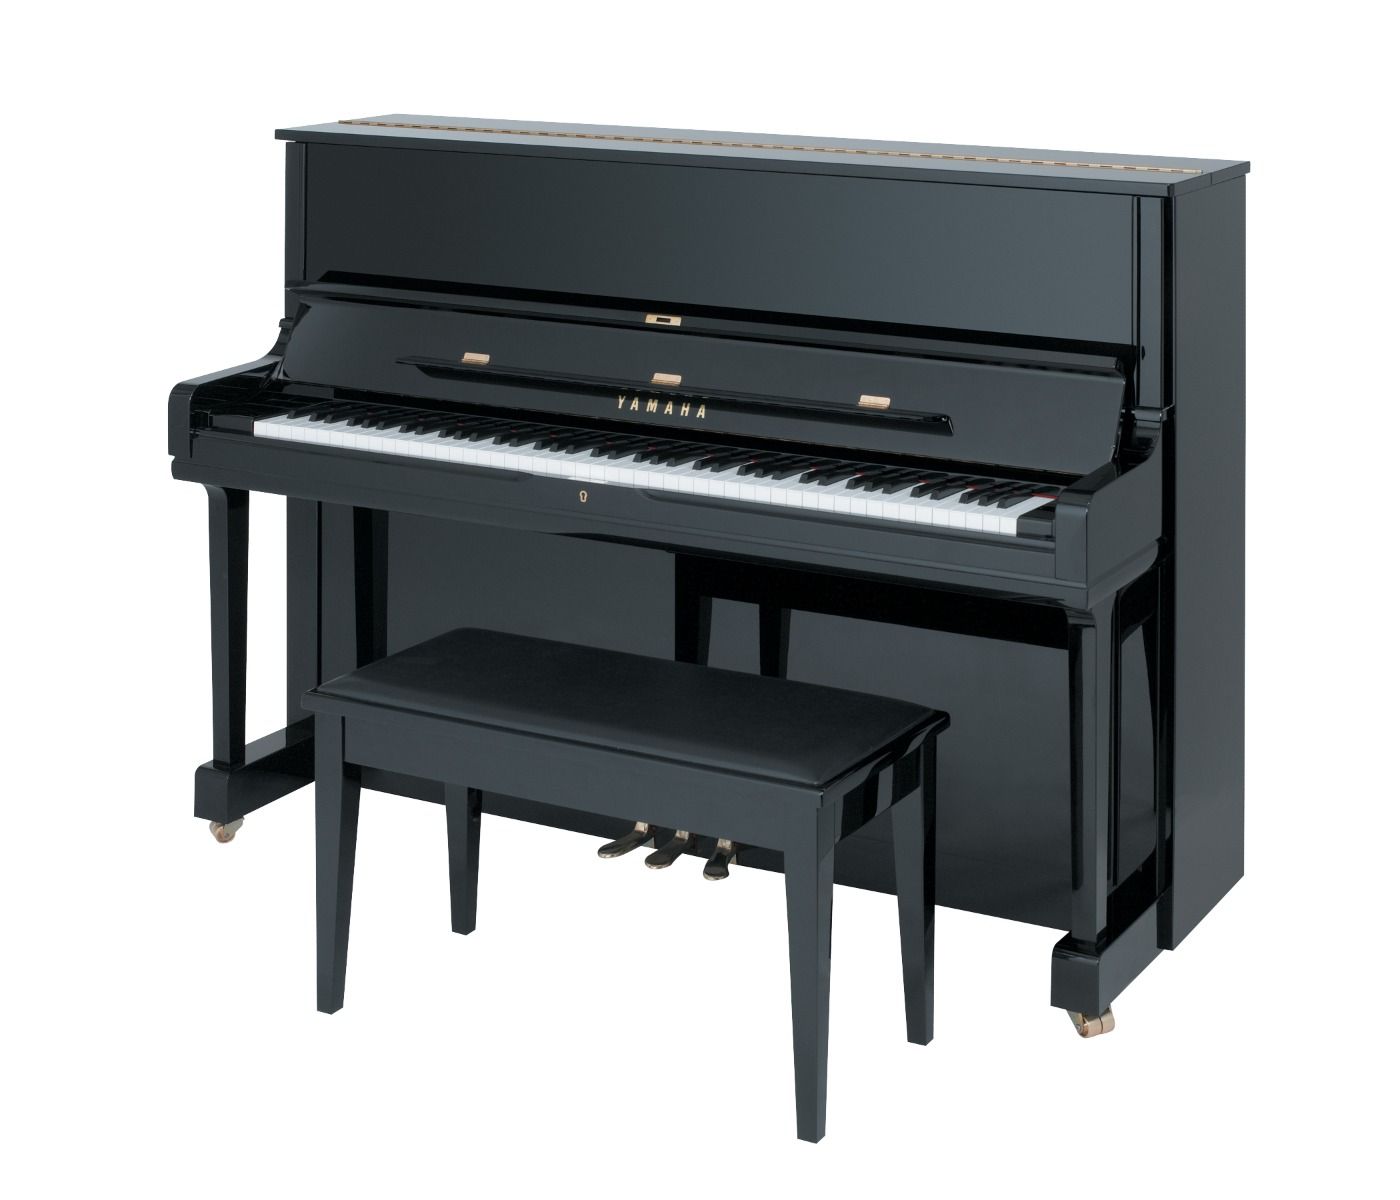 Yamaha YUS1 48" Professional Upright Piano in Polished Ebony